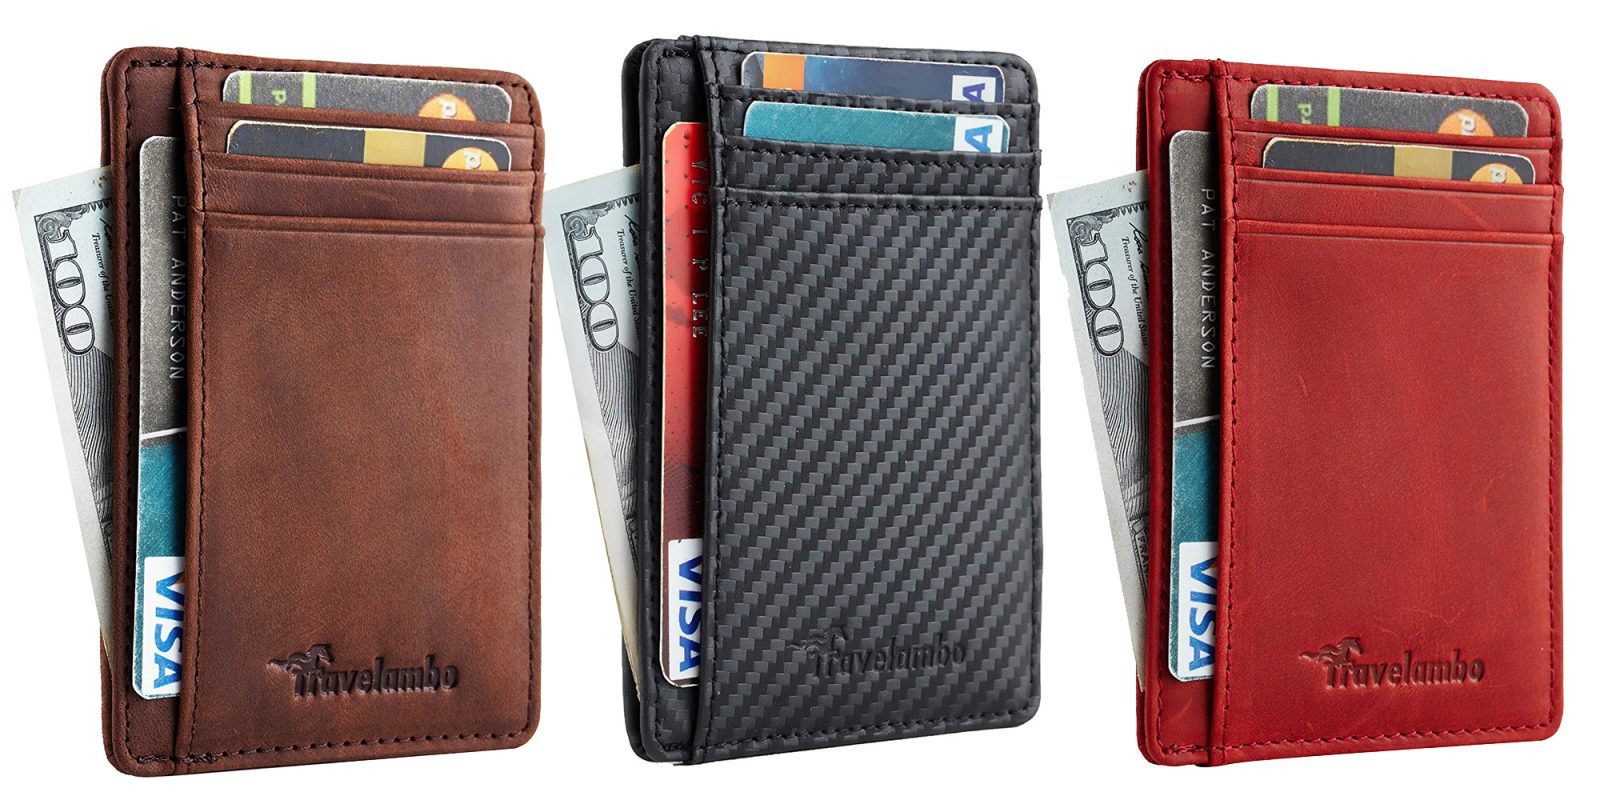 amazon prime travel wallet